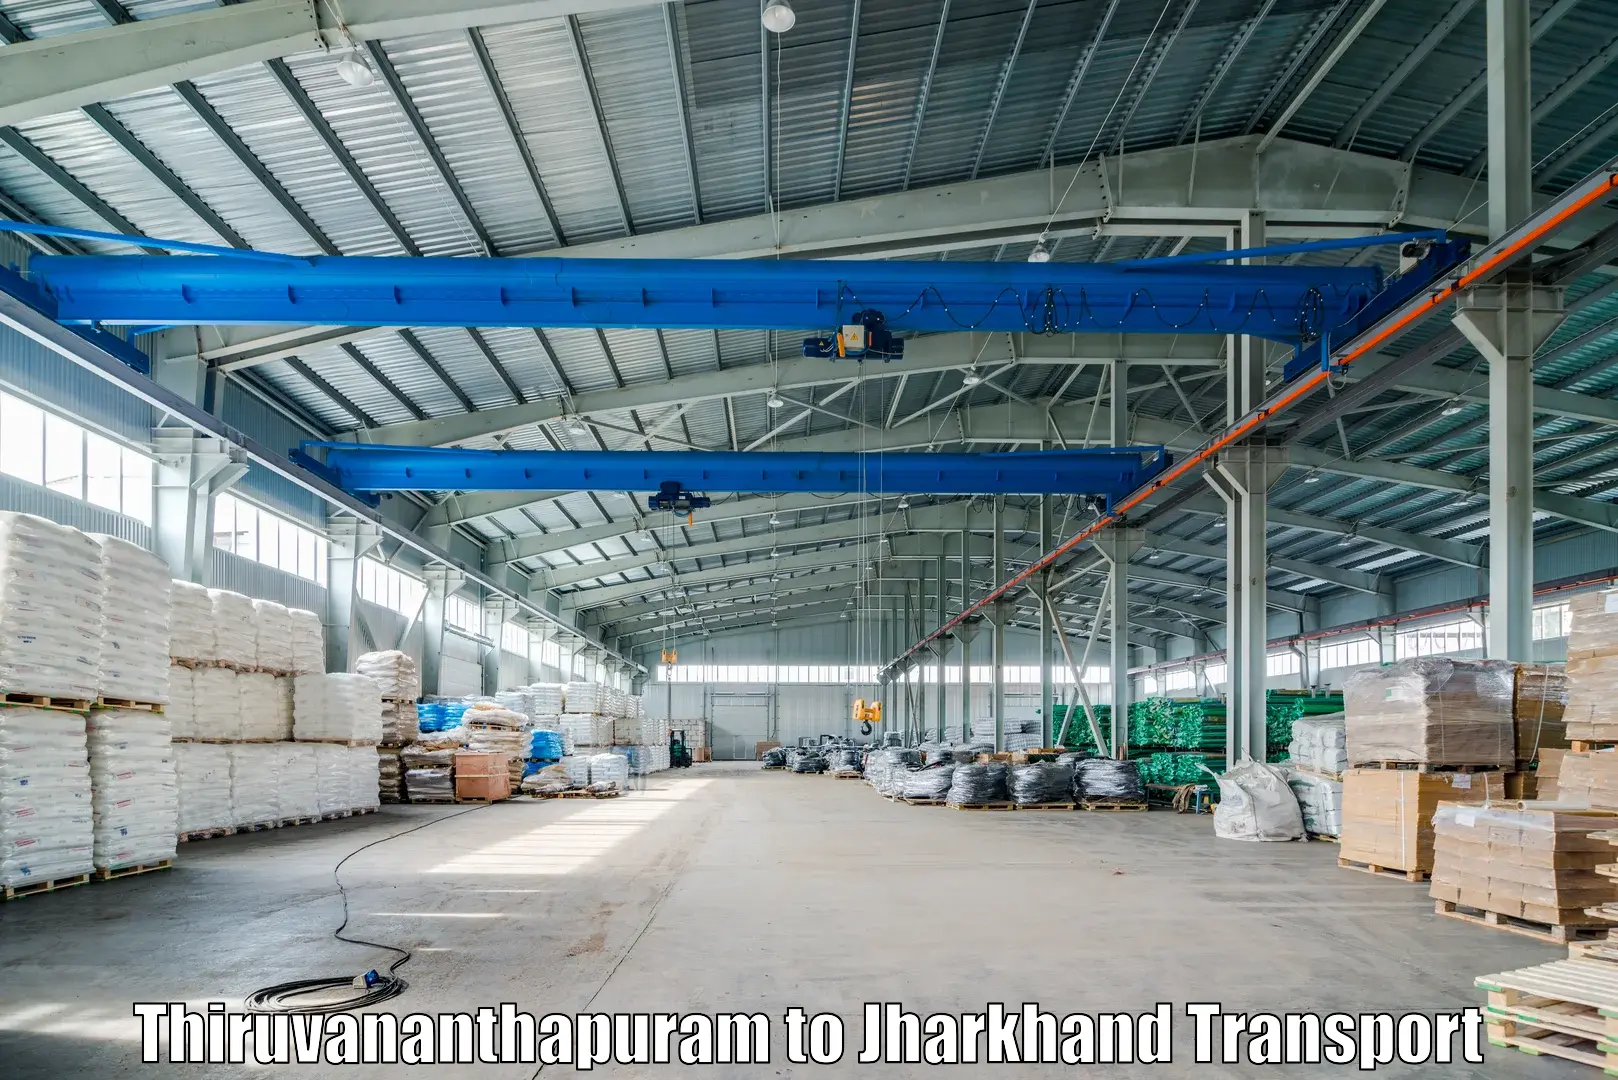 Express transport services Thiruvananthapuram to Hariharganj